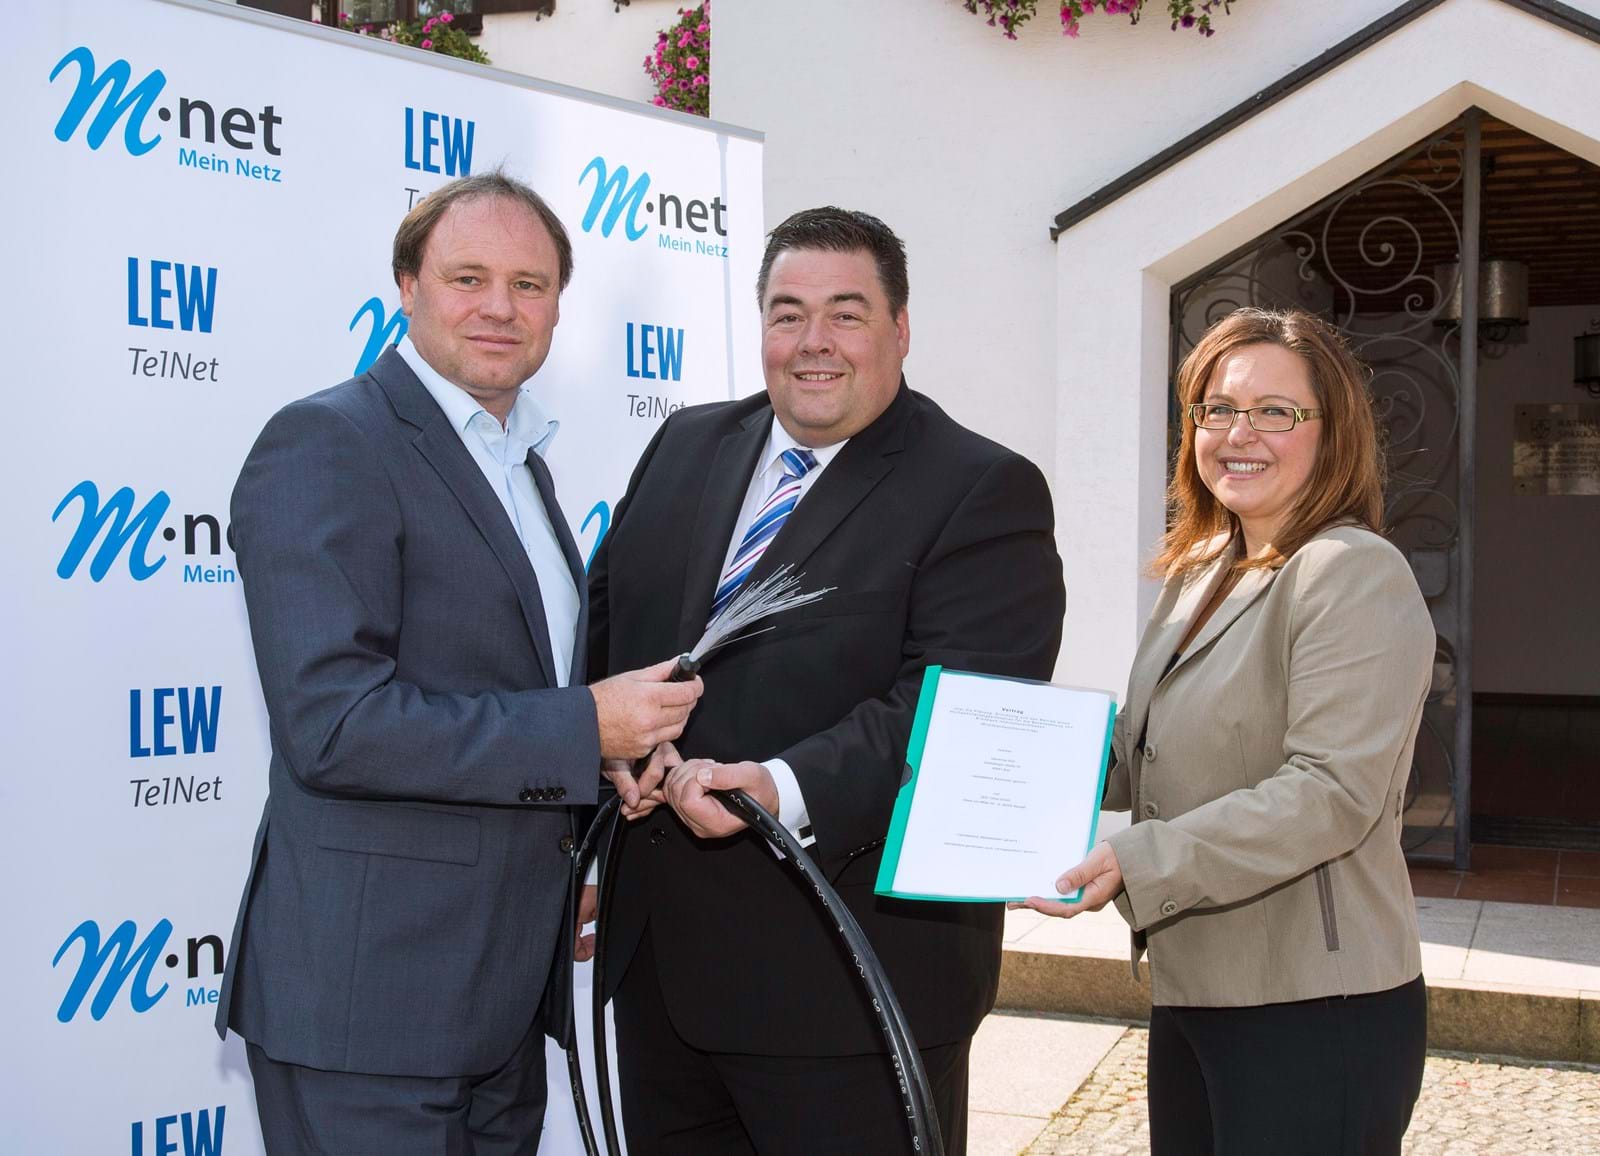 Mehr Glasfaser für Weil: LEW TelNet-Geschäftsführer Johannes Stepperger, Weils Bürgermeister Christian Bolz und Gabi Emmerling, Regionalbeauftragte Schwaben bei M-net, stellen den Kooperationsvertrag zum Breitbandprojekt vor.